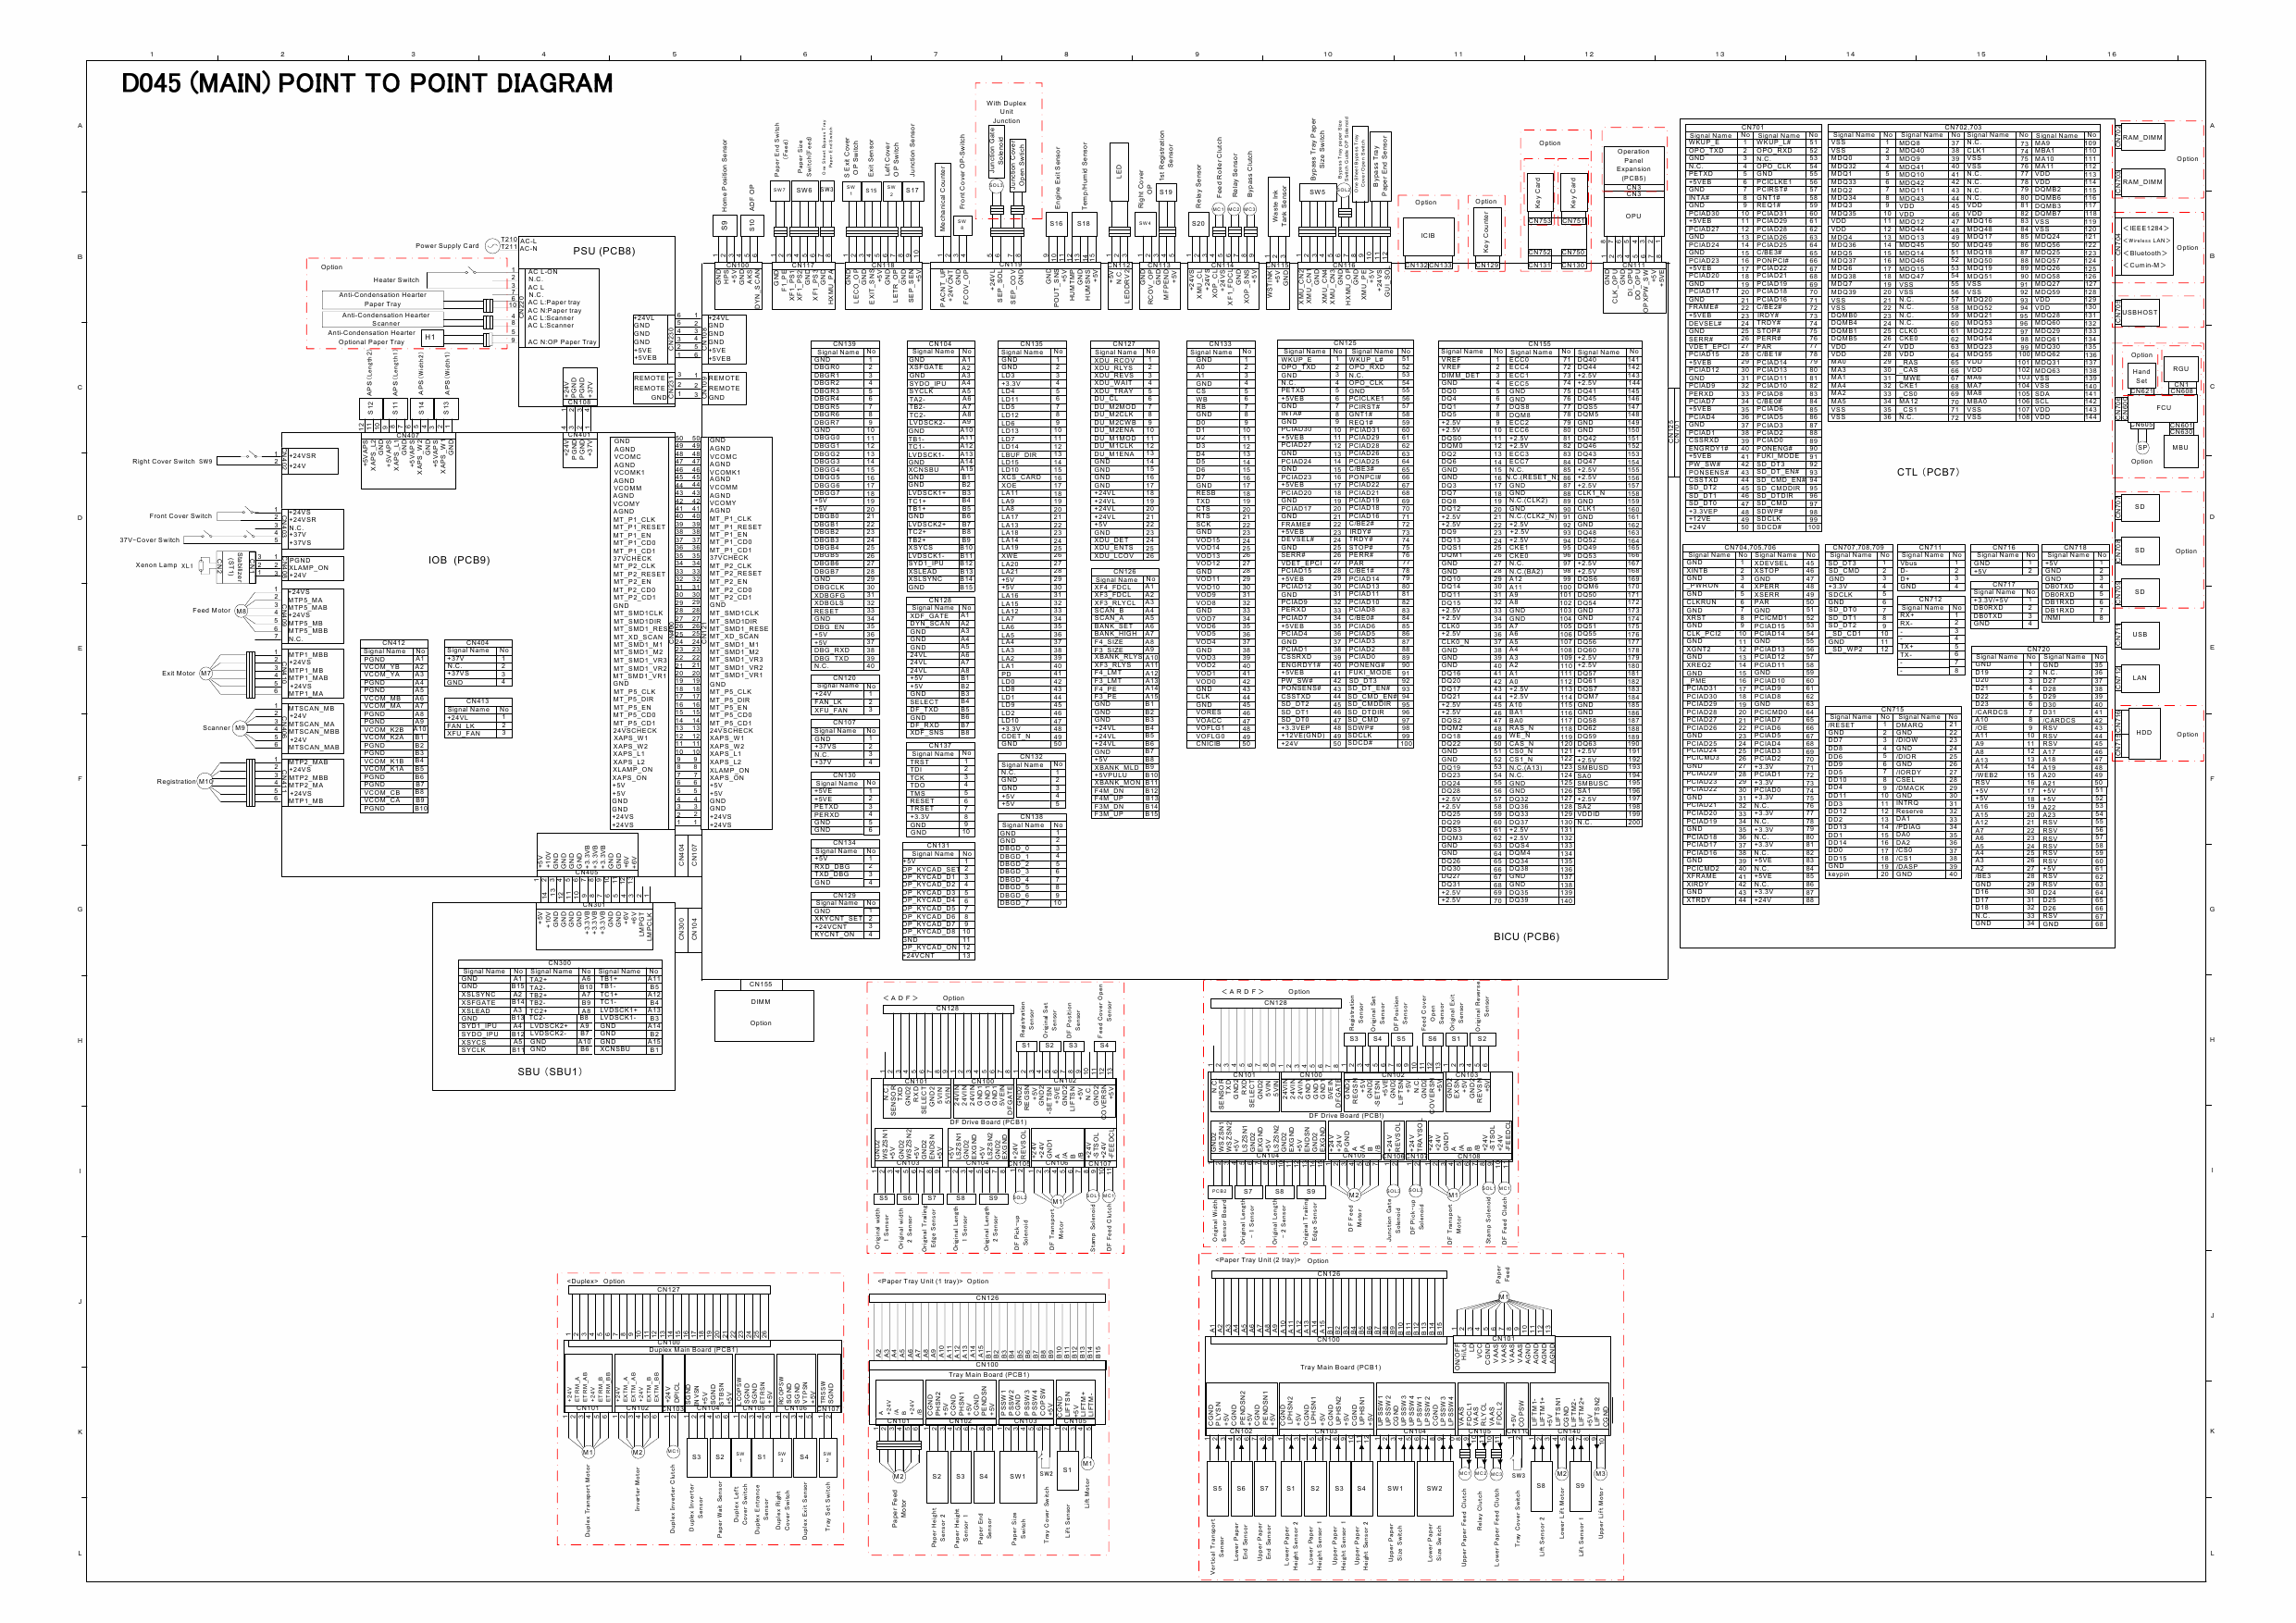 RICOH Aficio MP-C1800 D045 Circuit Diagram-1